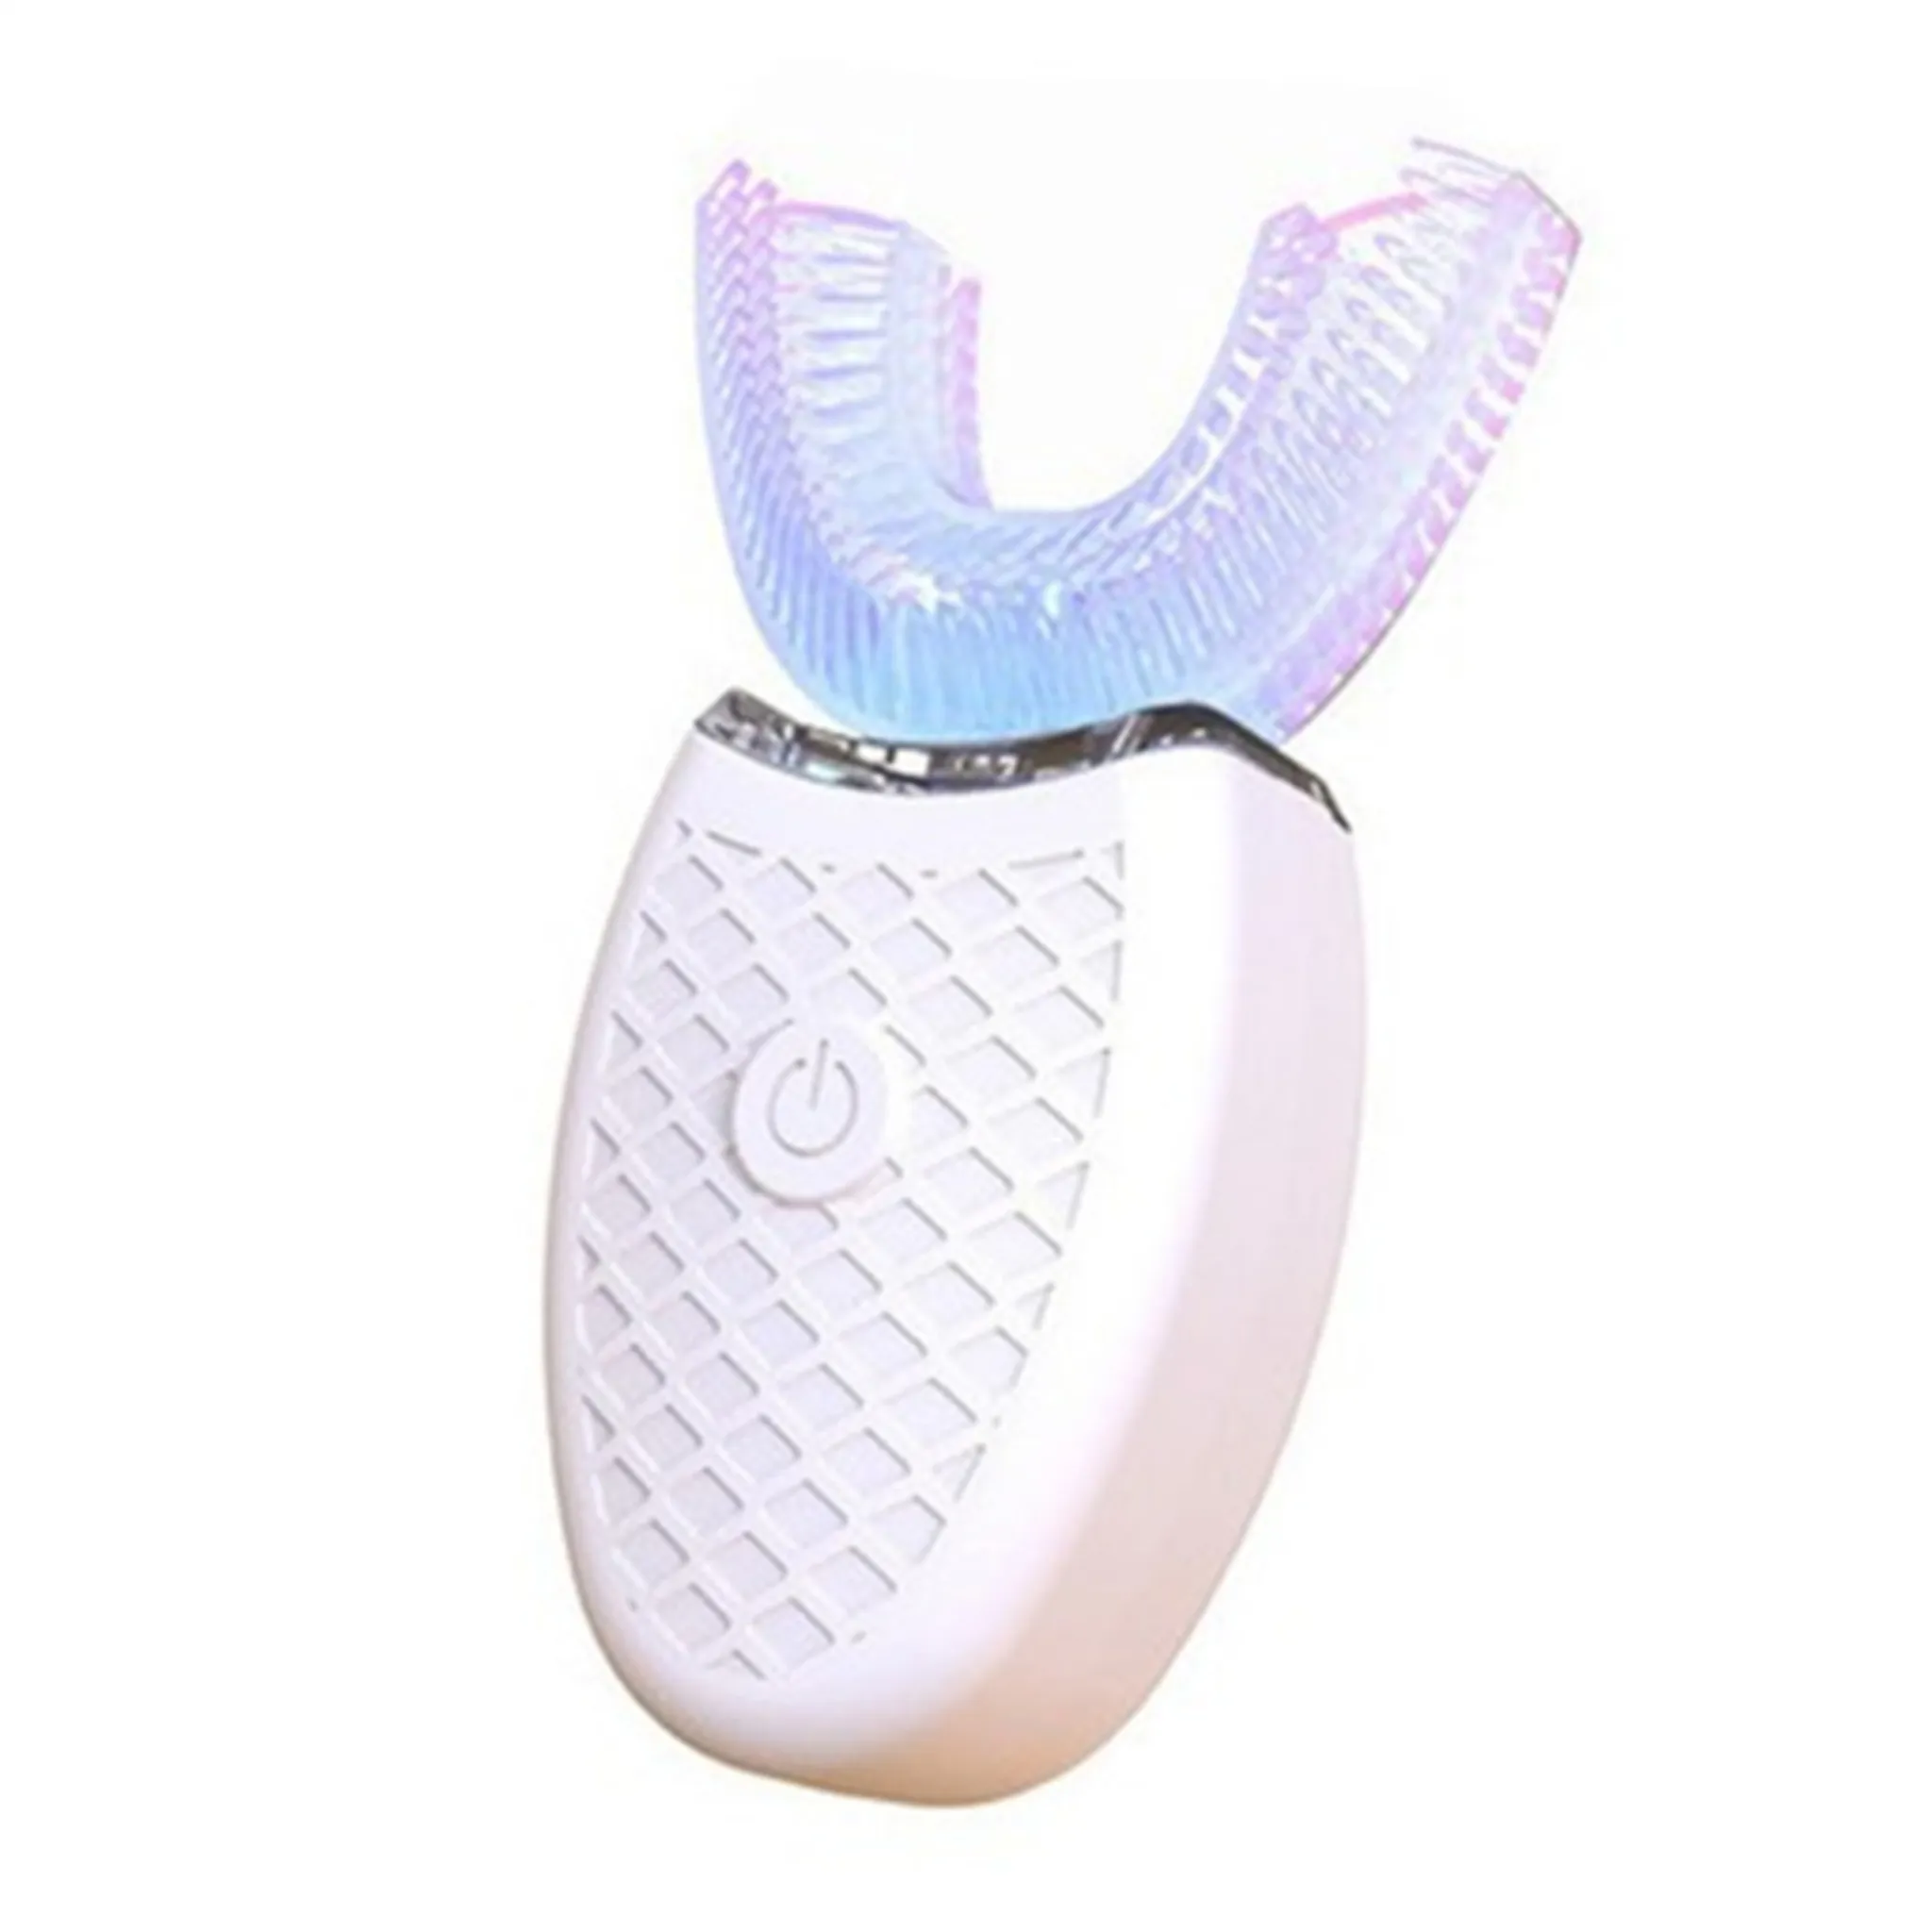 Ultraschall-Zahnbürste - Elektrische